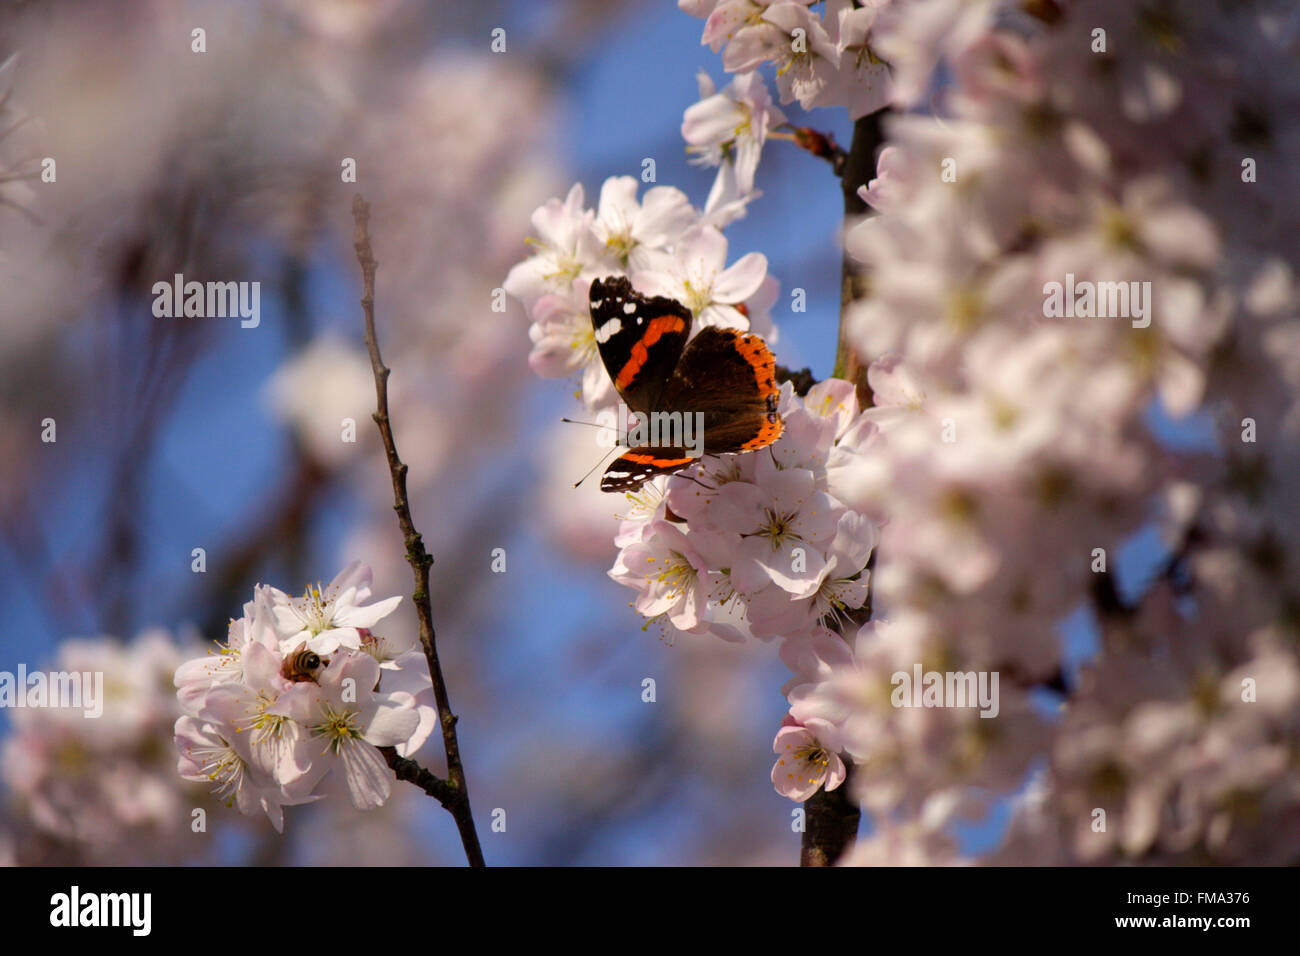 Schmetterling auf bluehendem Kirschbaum: Nationalpark Unteres Odertal/ Oderauen, Criewen, Brandenburg. Foto Stock